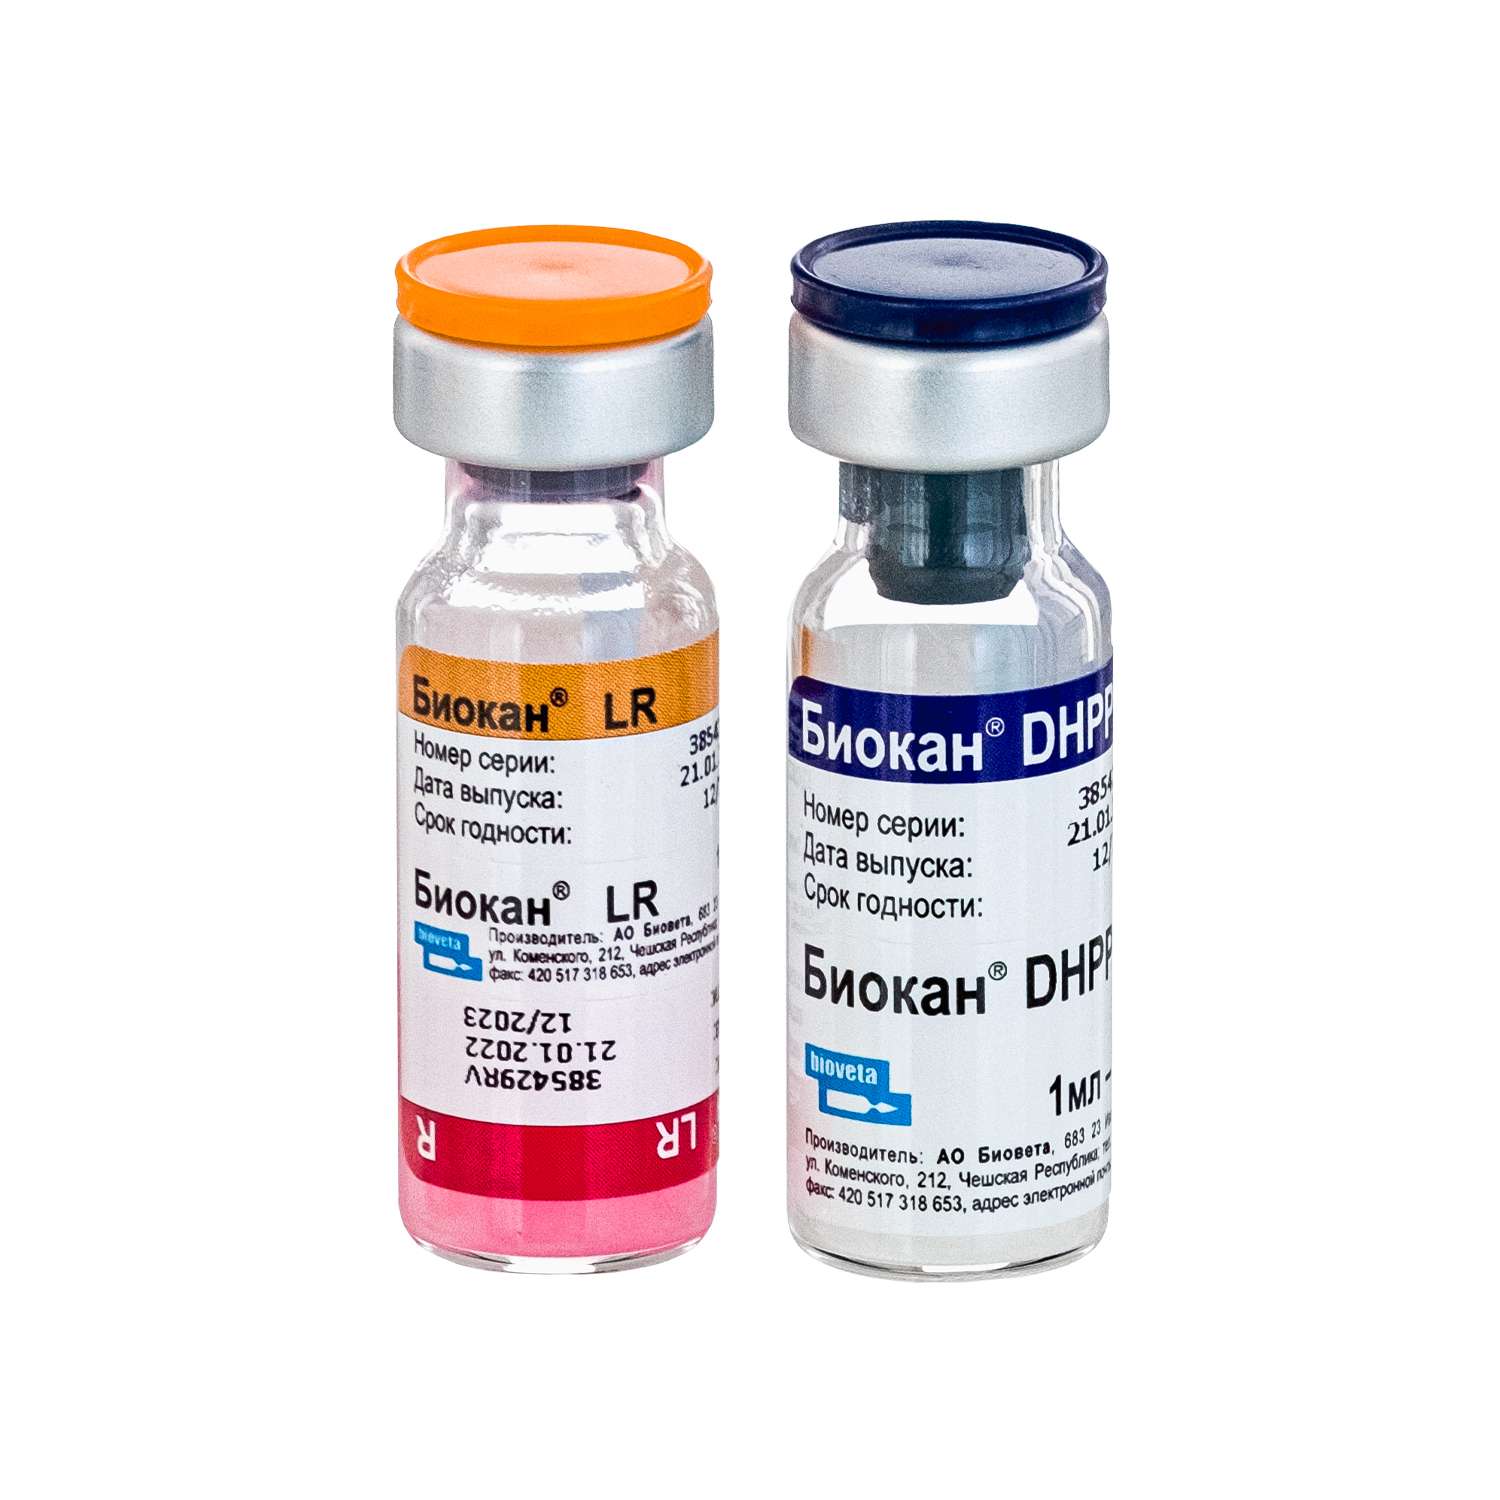 вакцина Биокан DHPPI+LR фото, цены, купить